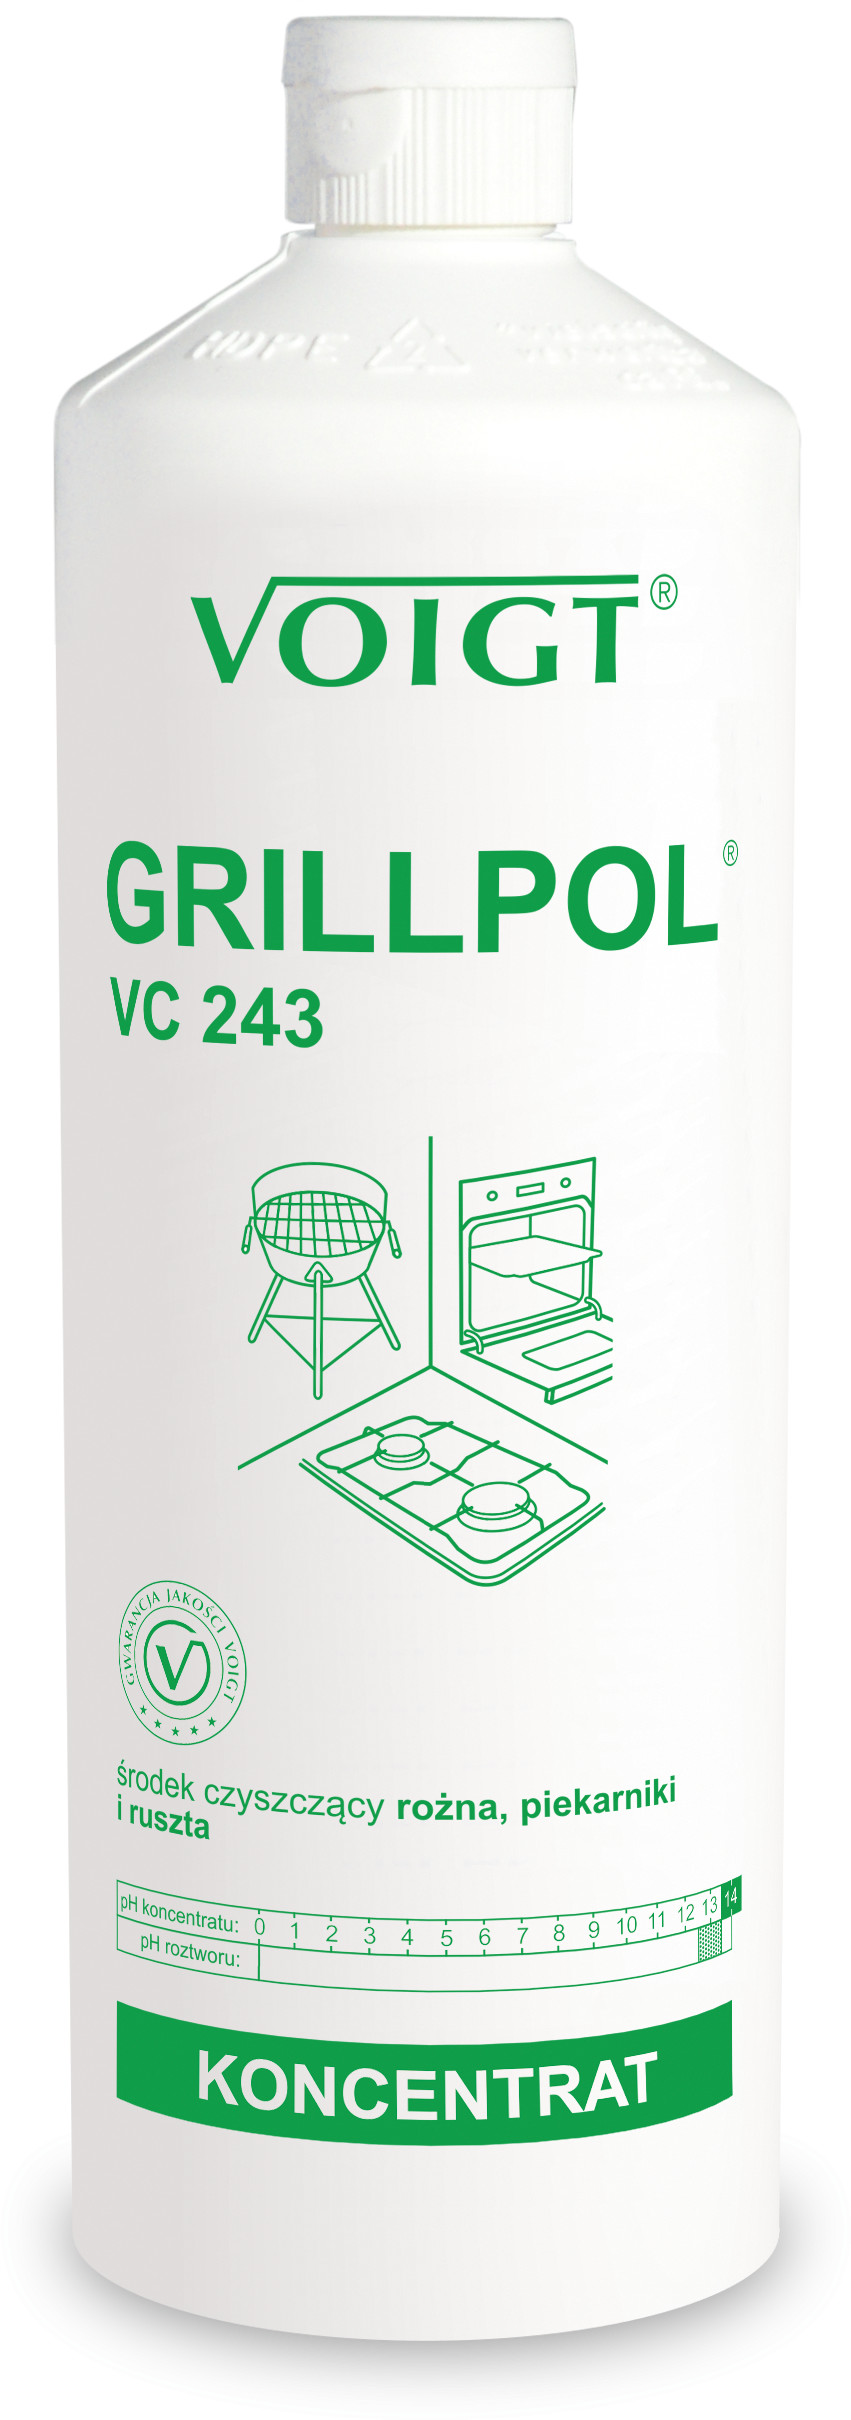 Voigt VC 243 1l. GRILLPOL do doczyszczania piekarników grilli i silnych zapieczeń pH 14 VC 243 1l. GRILLPOL